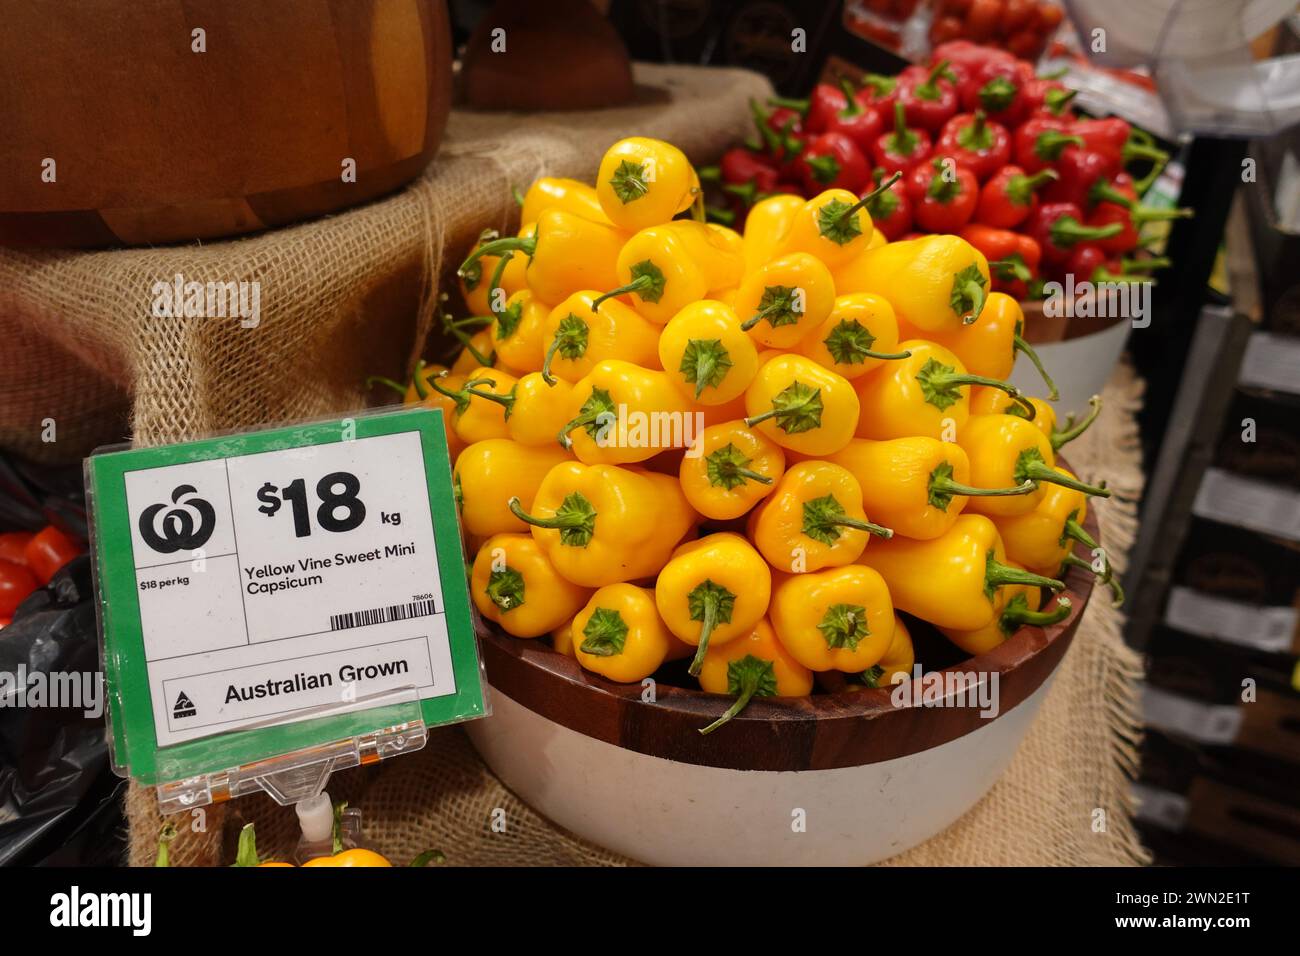 Mini capsicum dolce di vite gialla in vendita all'interno di un negozio di alimentari in Australia, che mette in mostra prodotti vivaci e freschi a disposizione dei clienti. Foto Stock